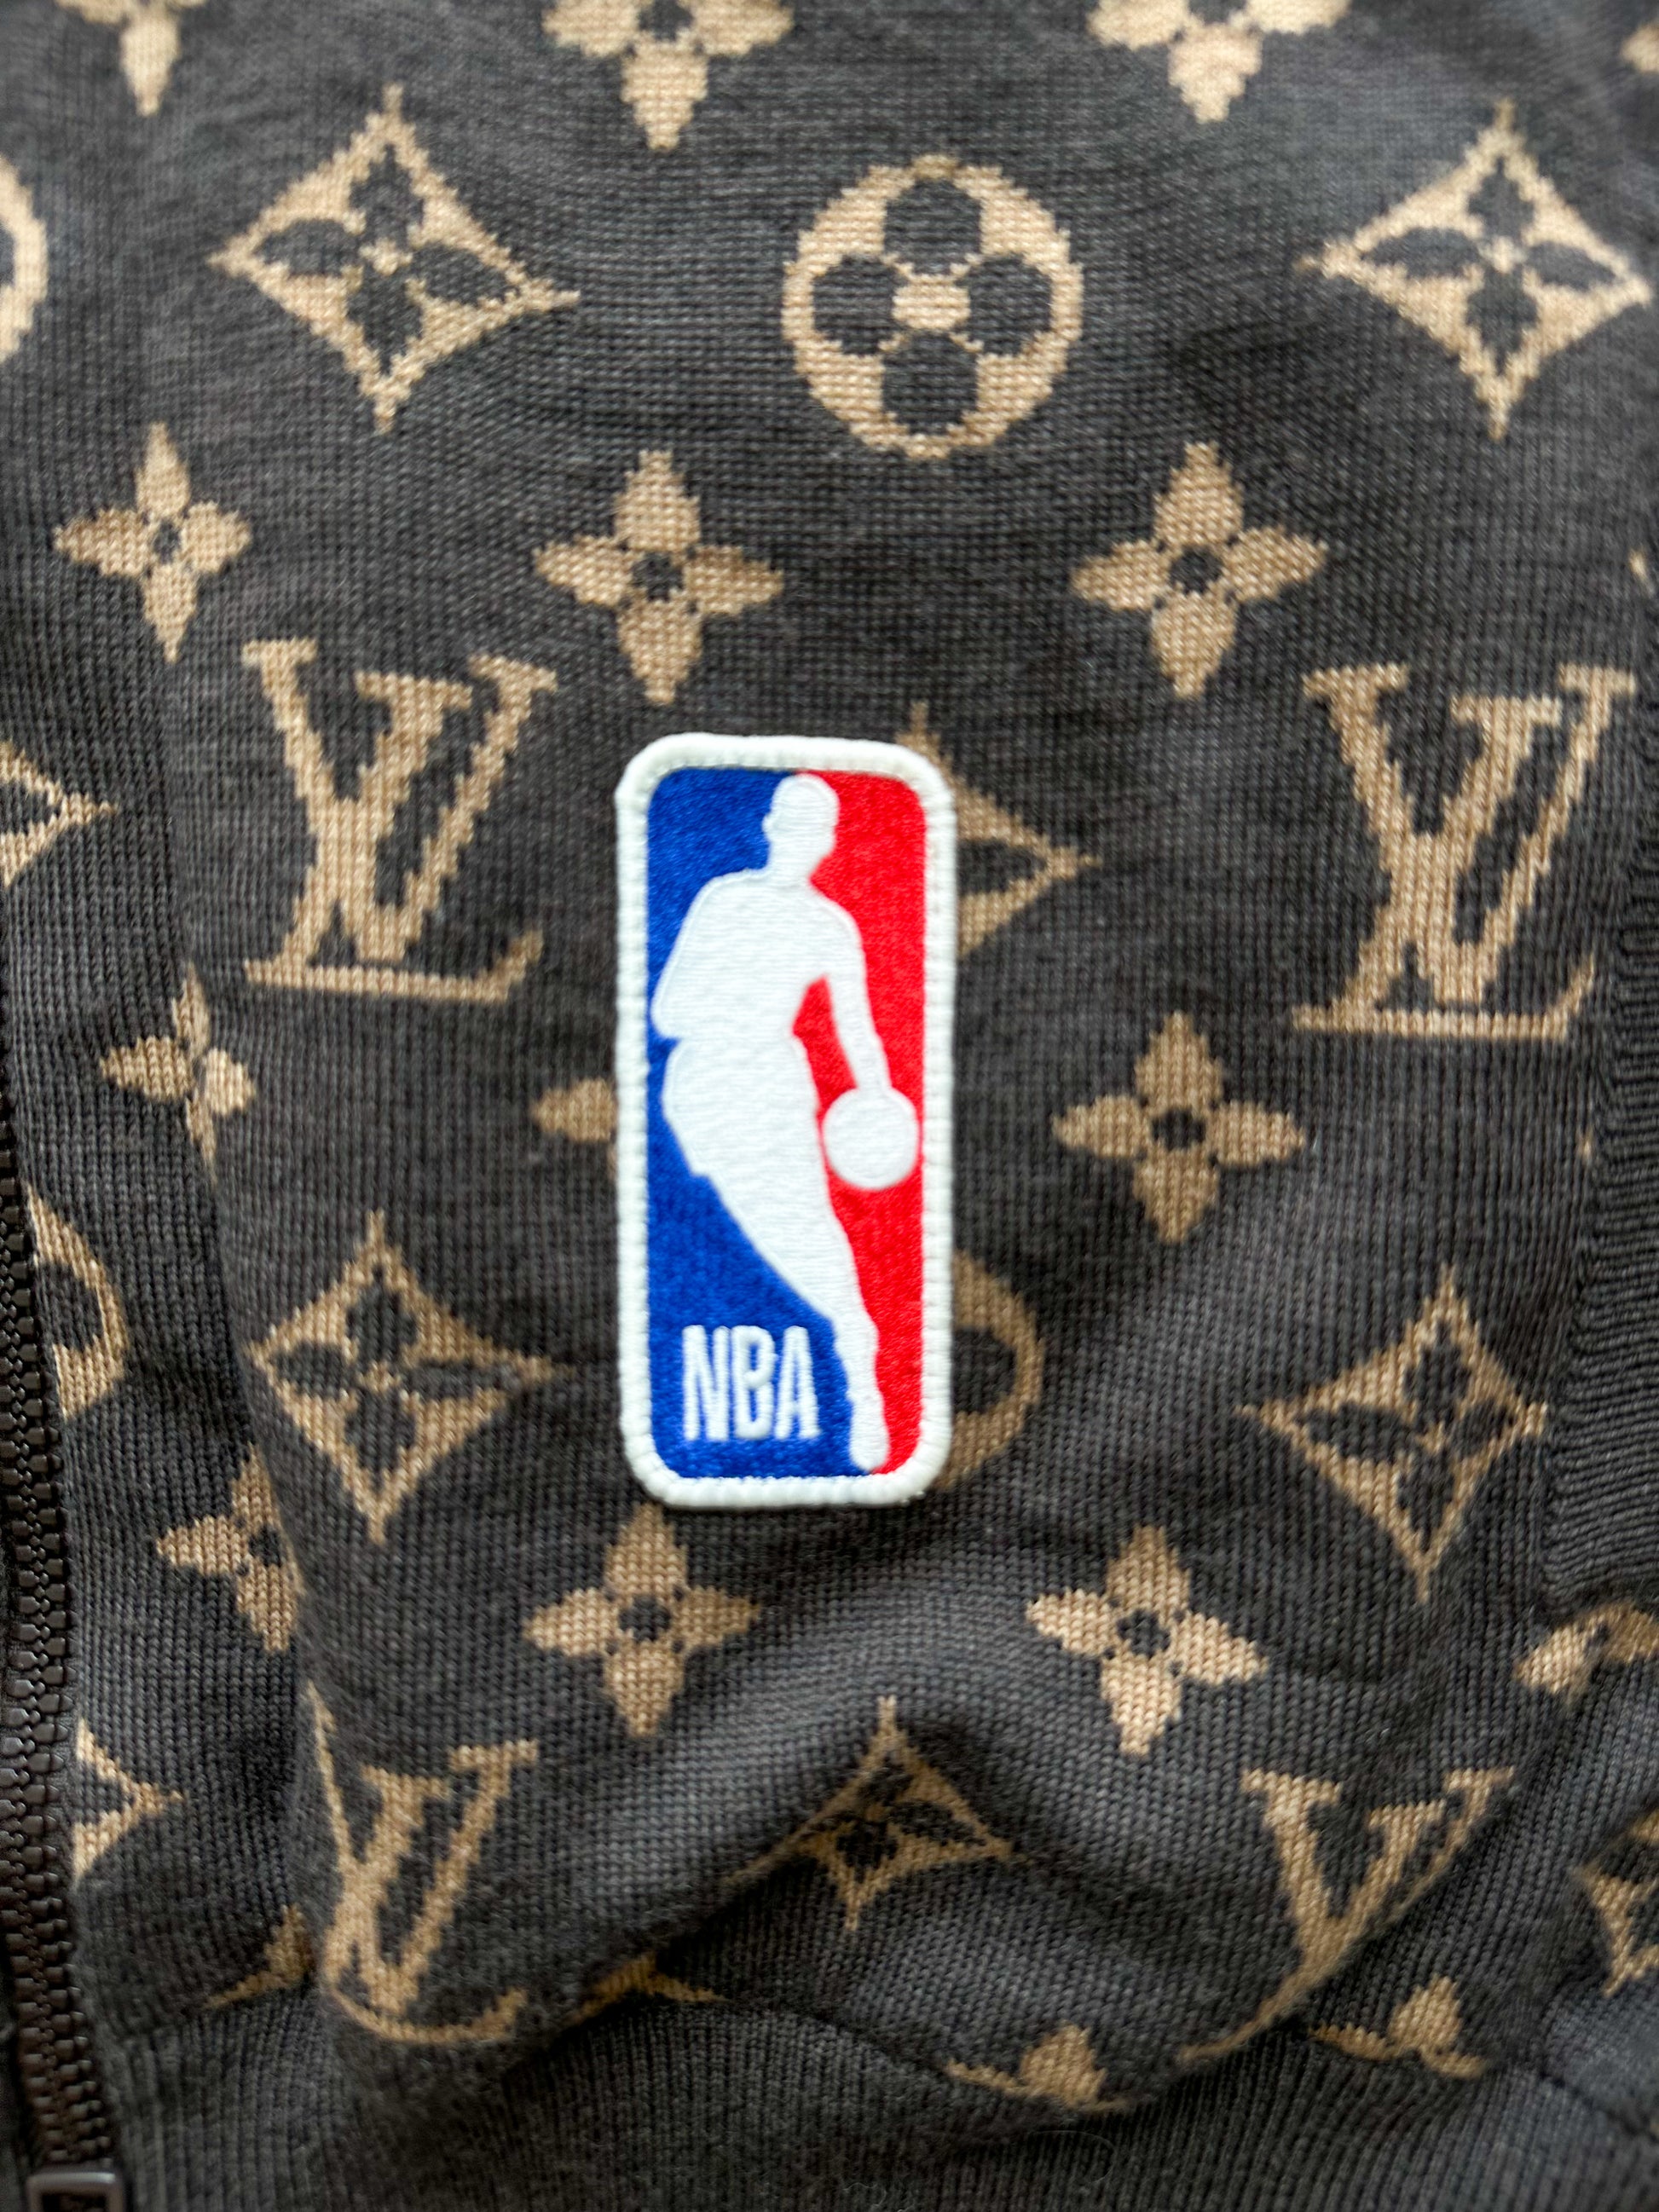 Louis Vuitton Logo Torn Ripped Dark Brown Monogram Bomber Jacket